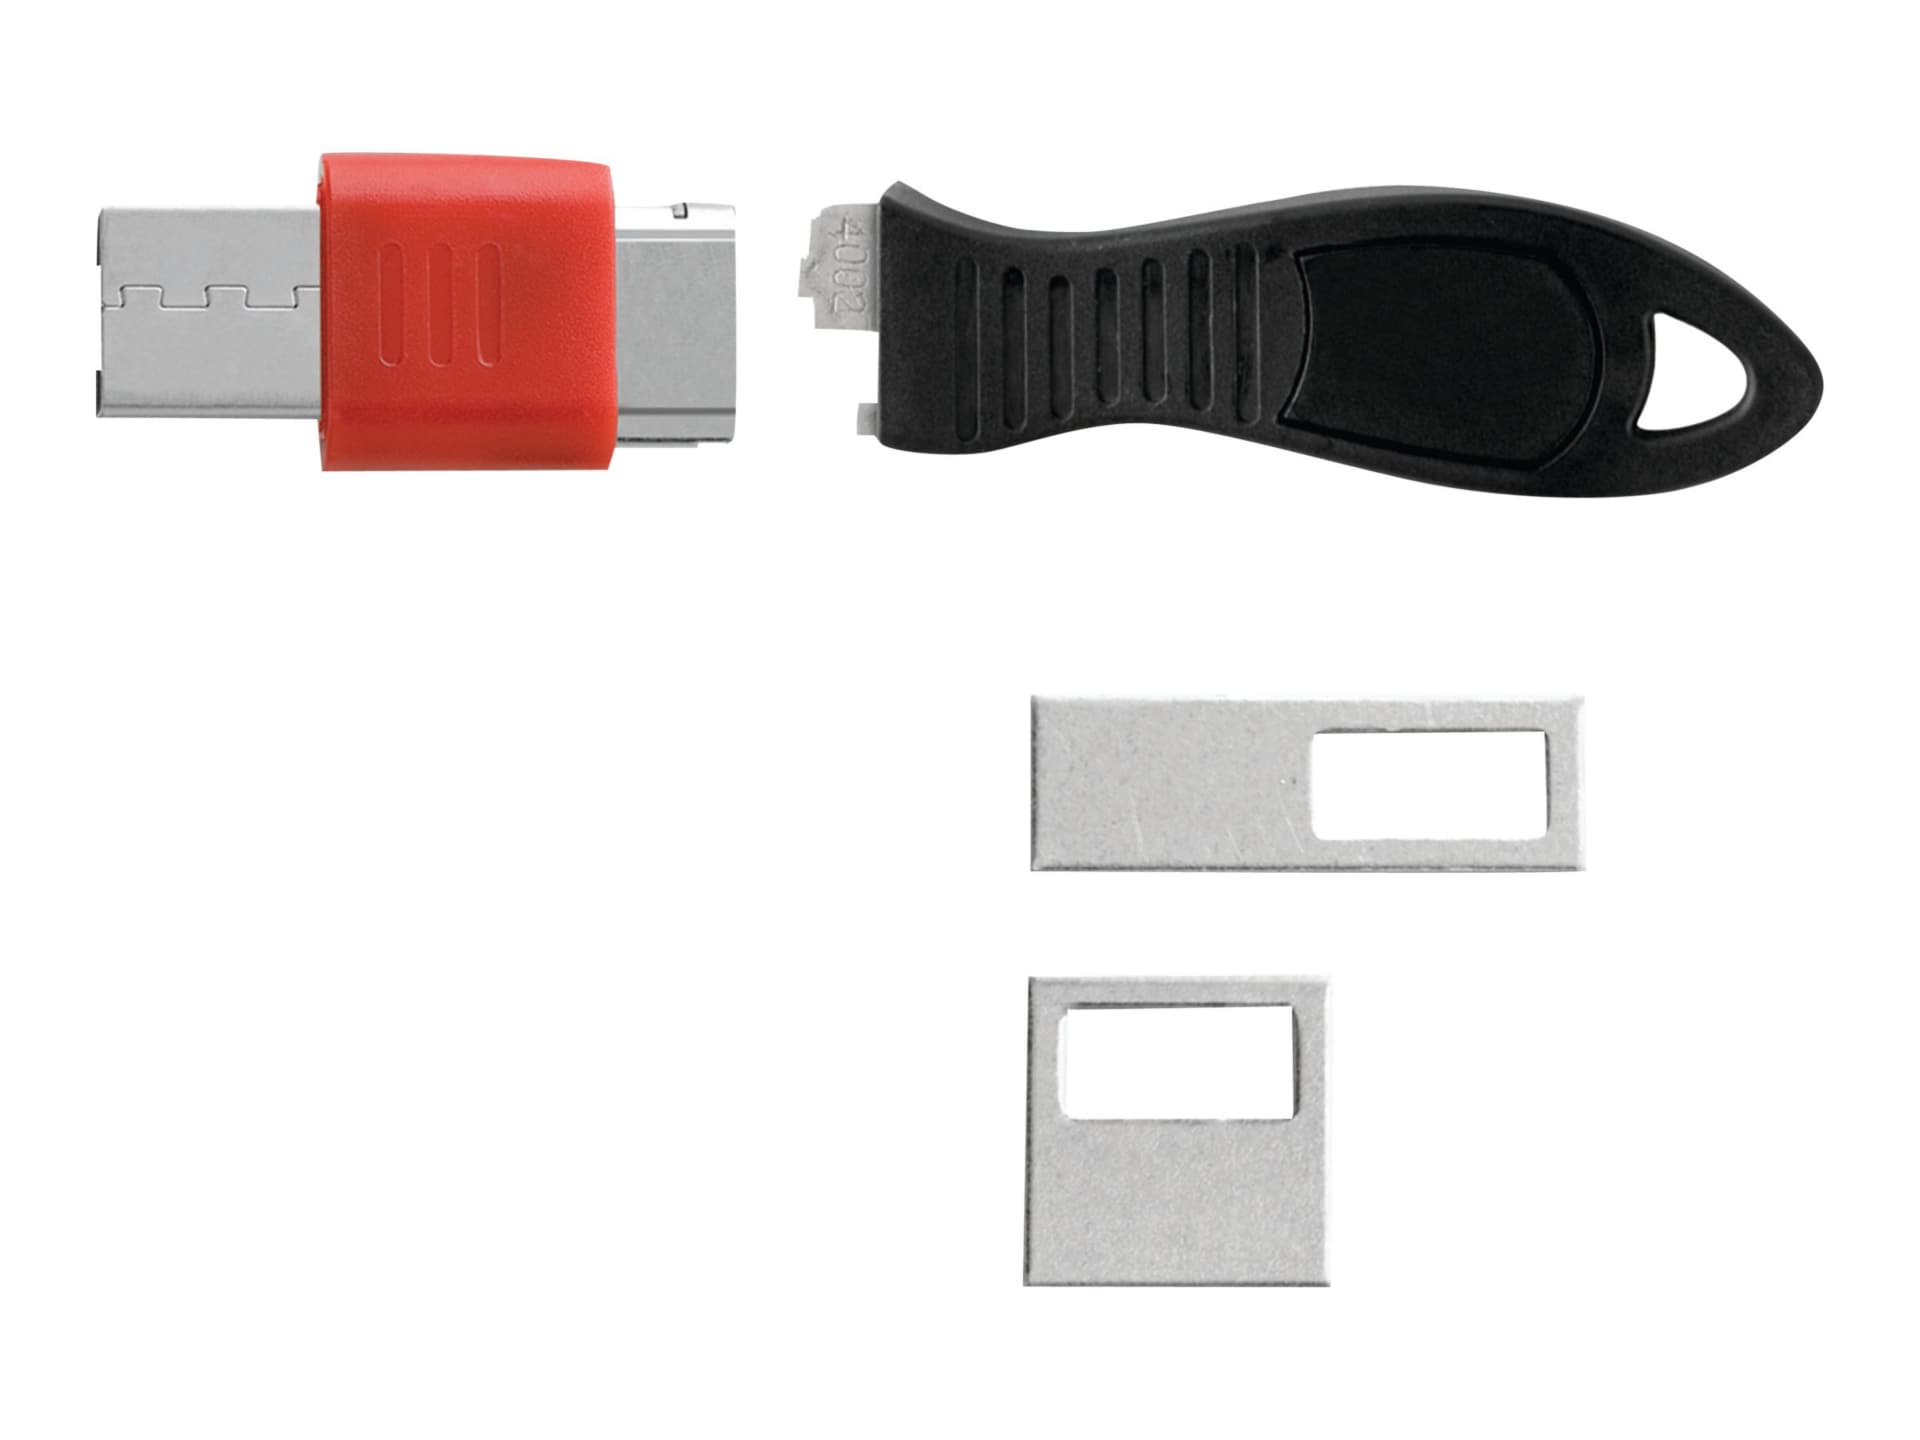 Kensington - USB port blocker